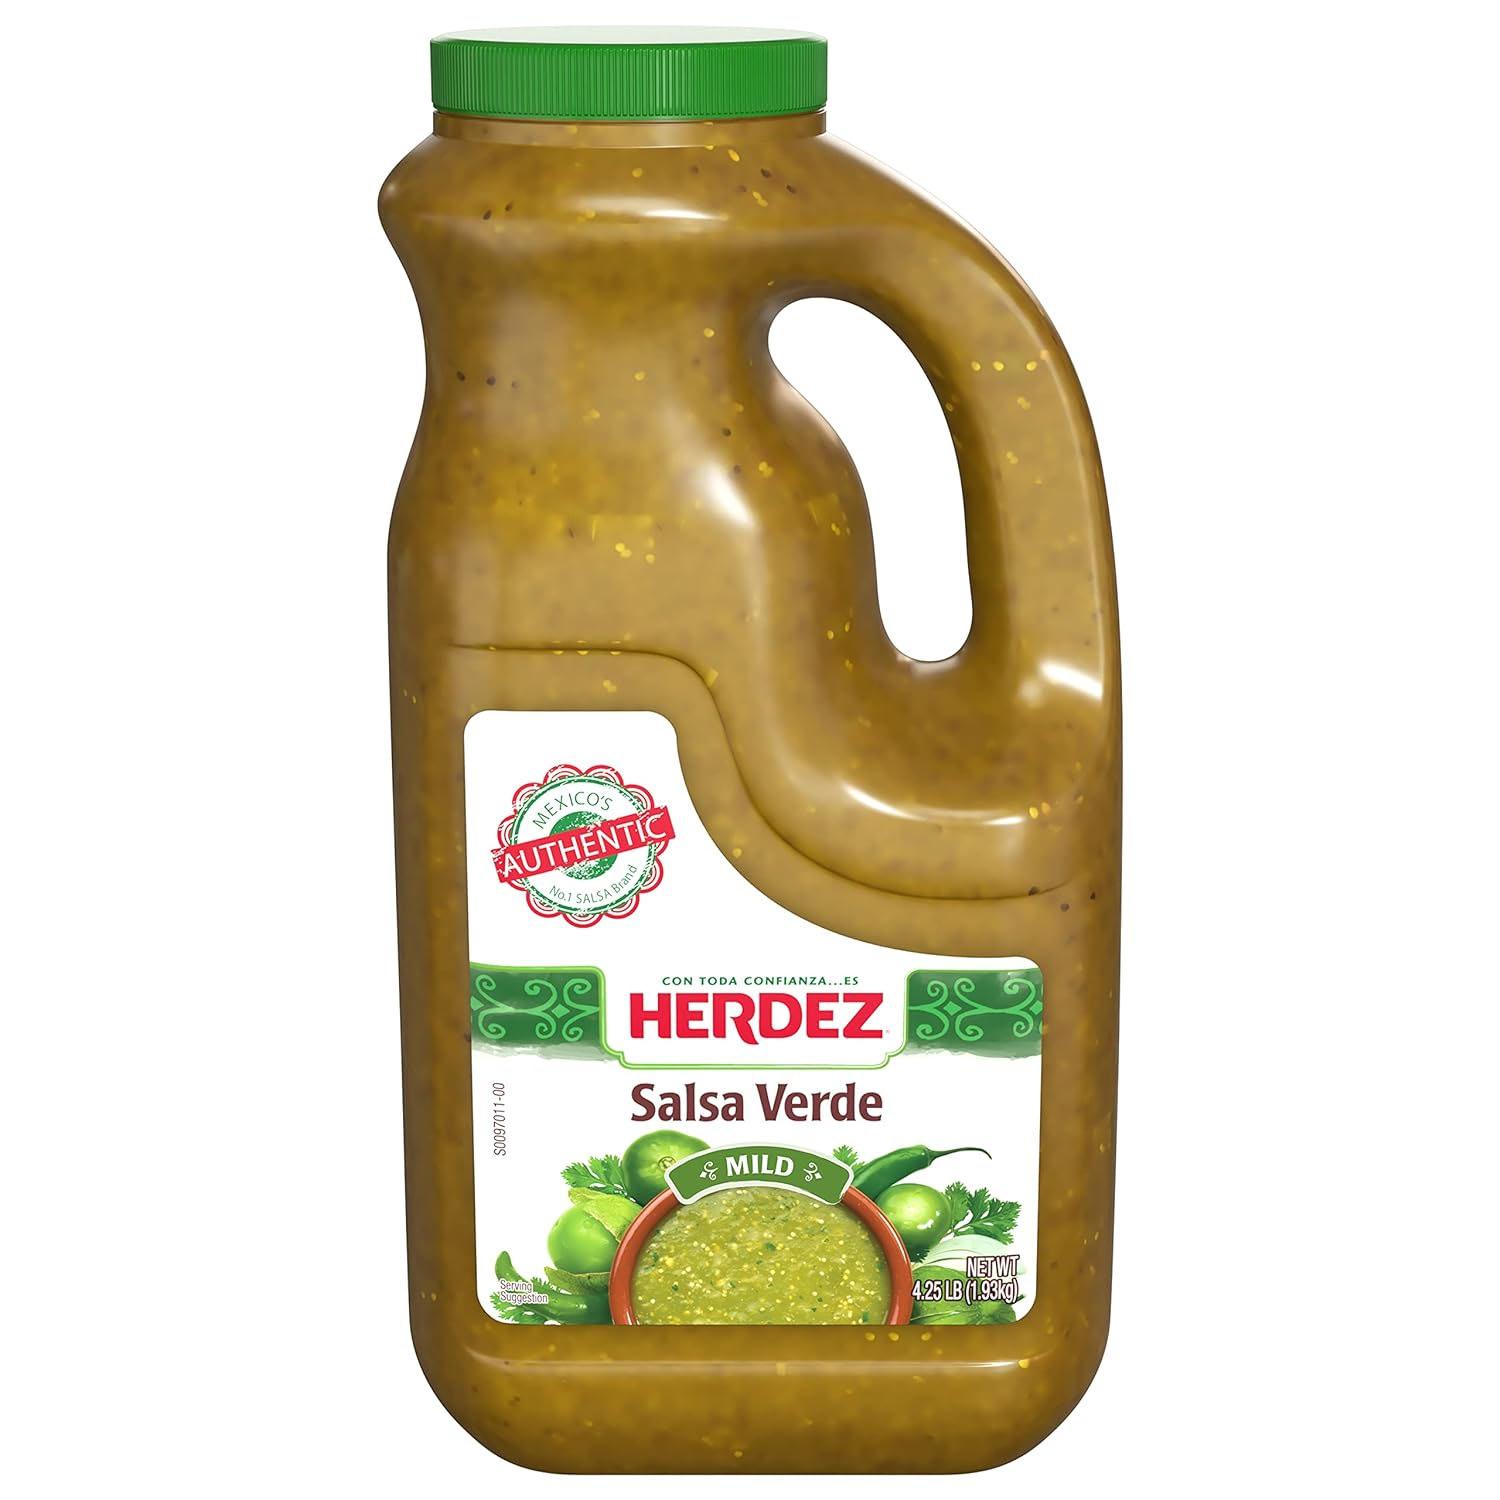 Herdez Salsa Verde 68oz for $5.24